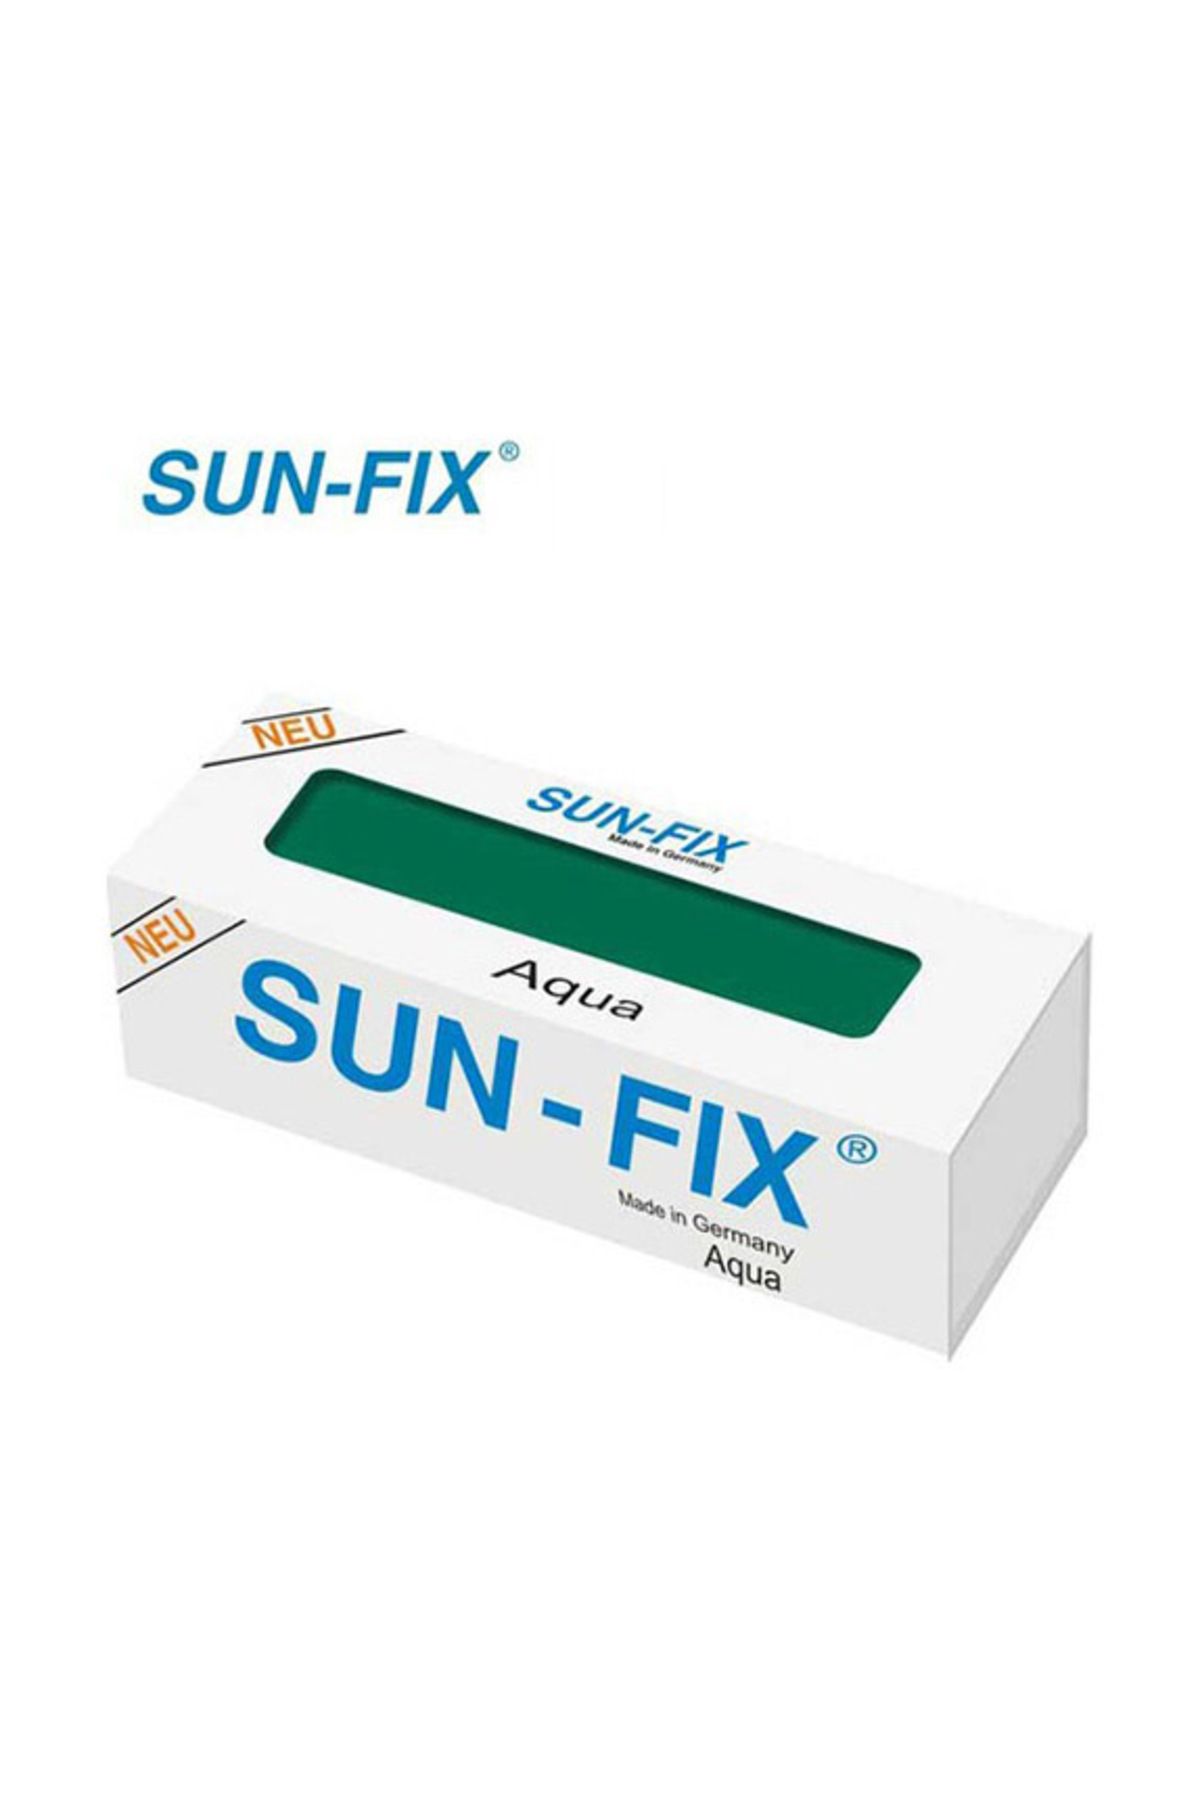 Sun-Fix Sun-fix Aqua (ISLAK ORTAMLAR) Macun Kaynak Yapıştırıcı 50 gr